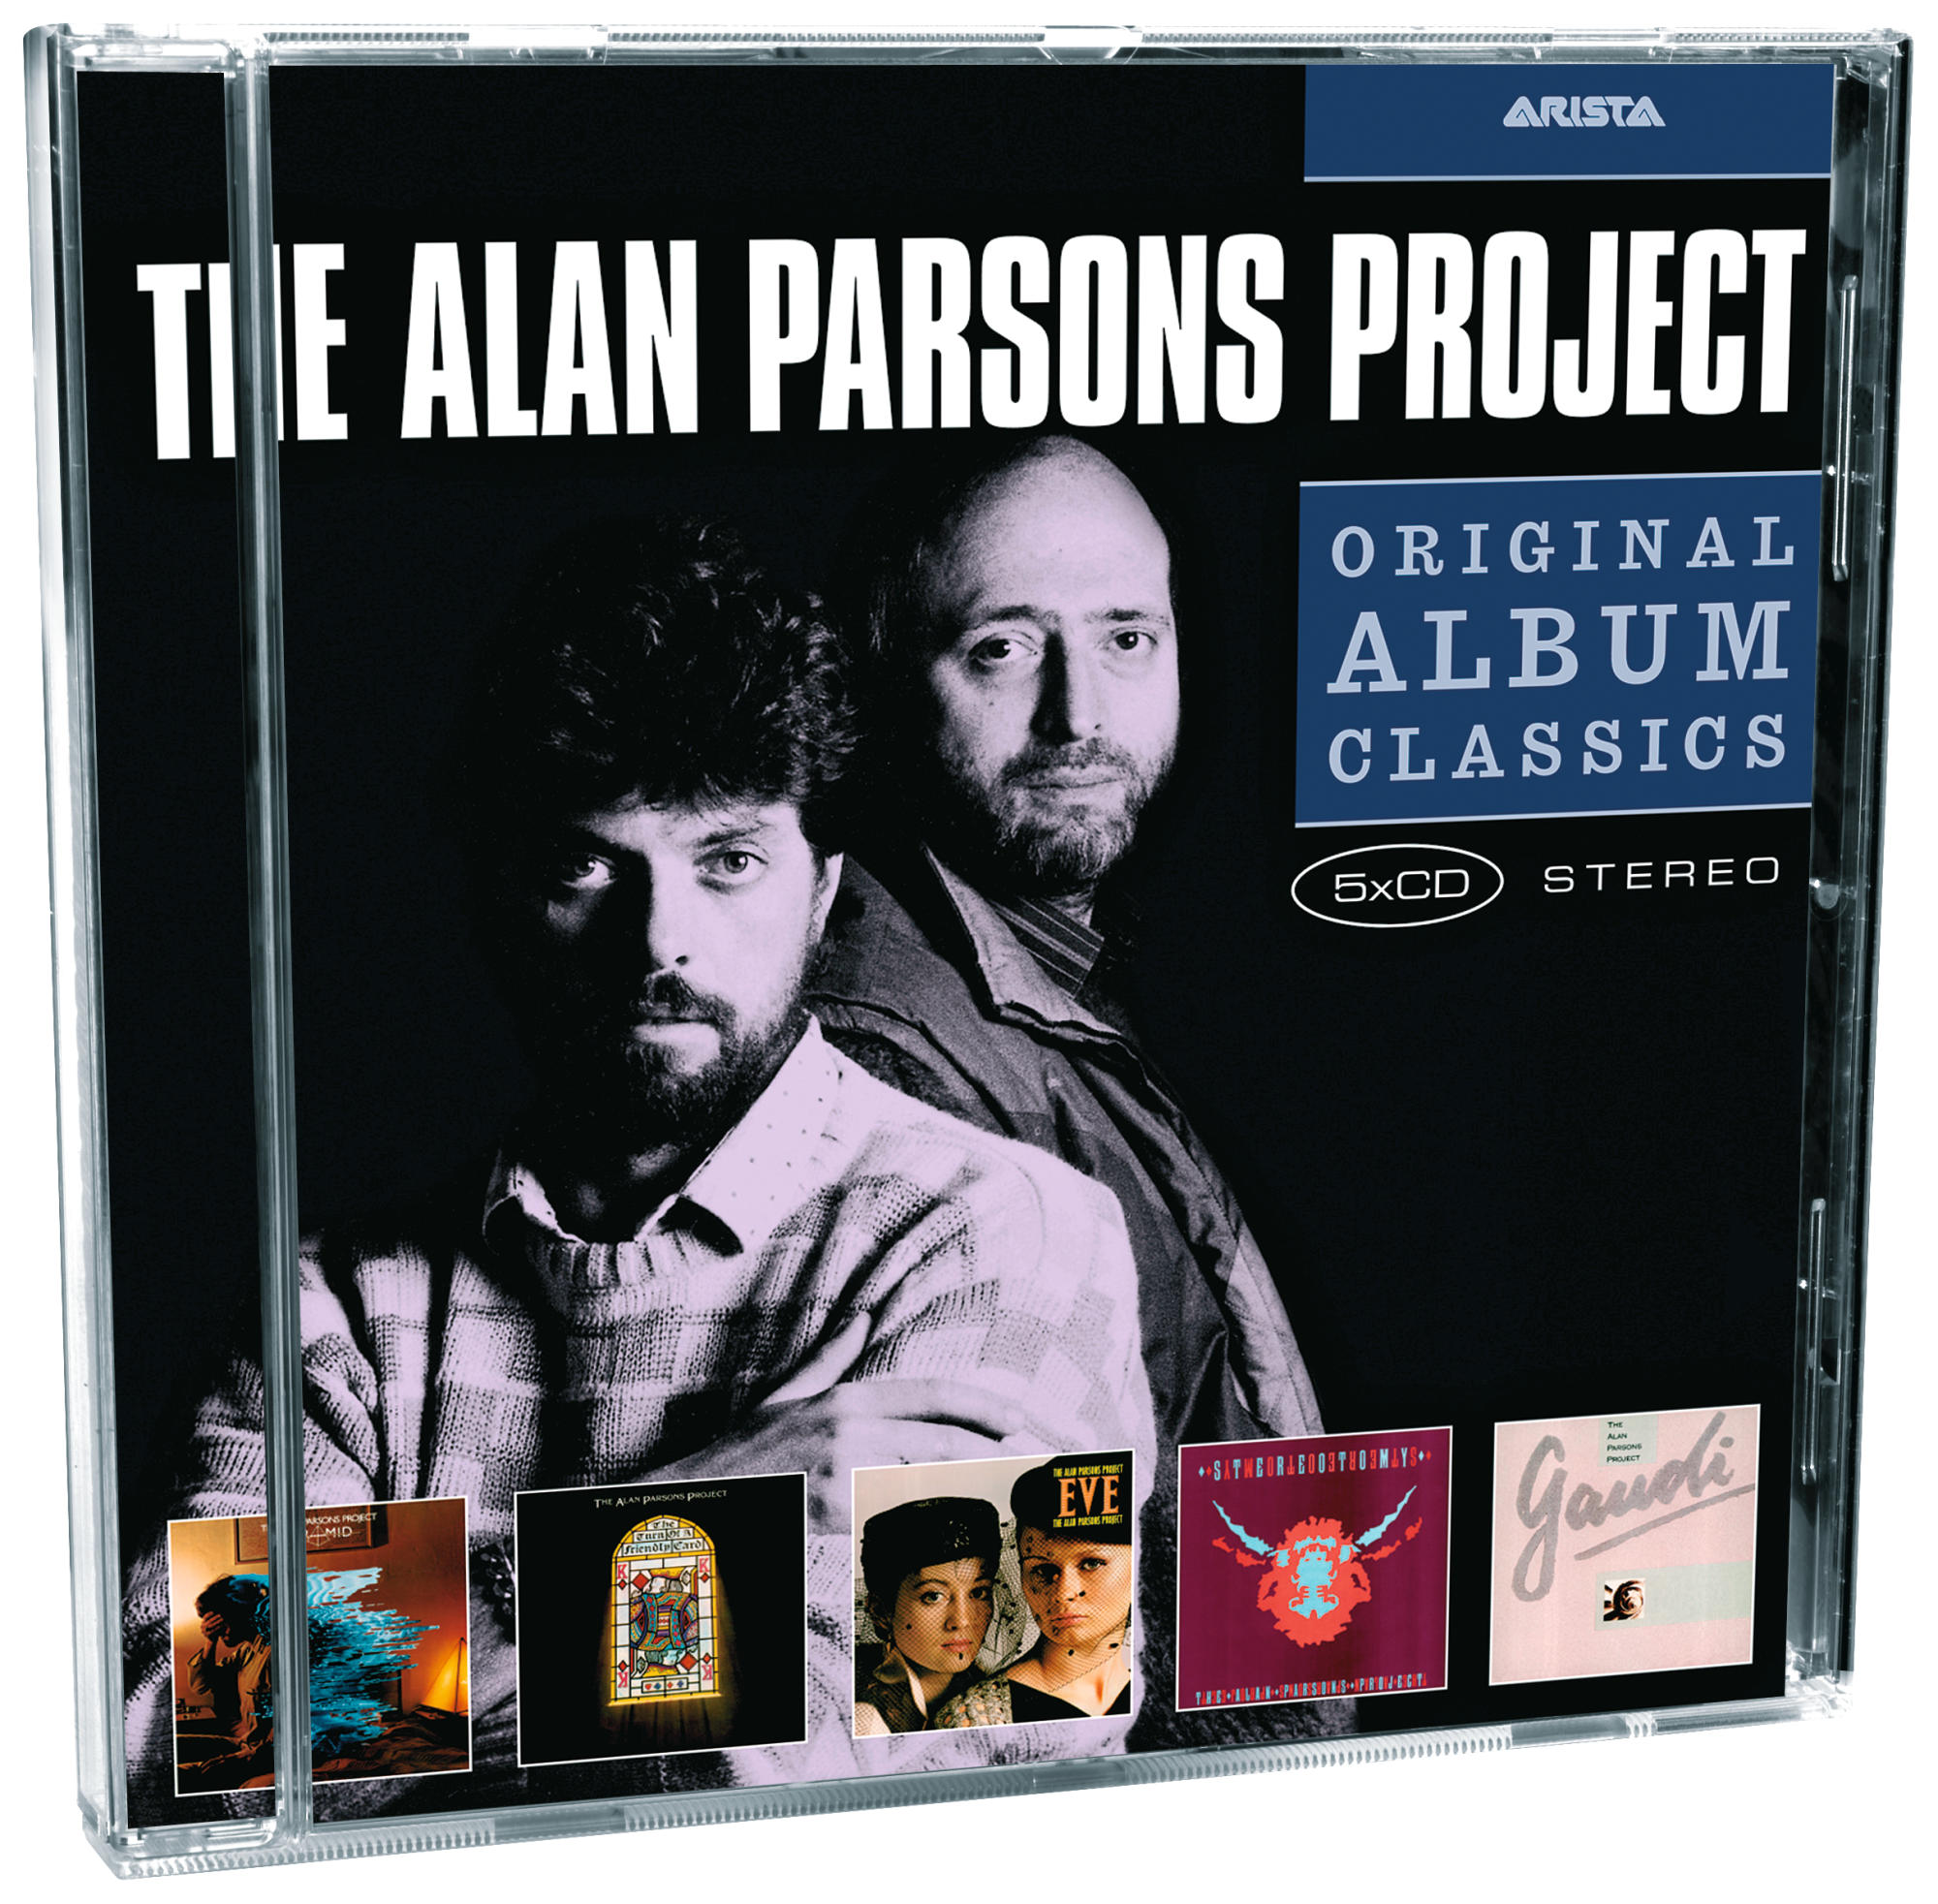 The Alan Parsons Original - Classics (CD) Album Project 